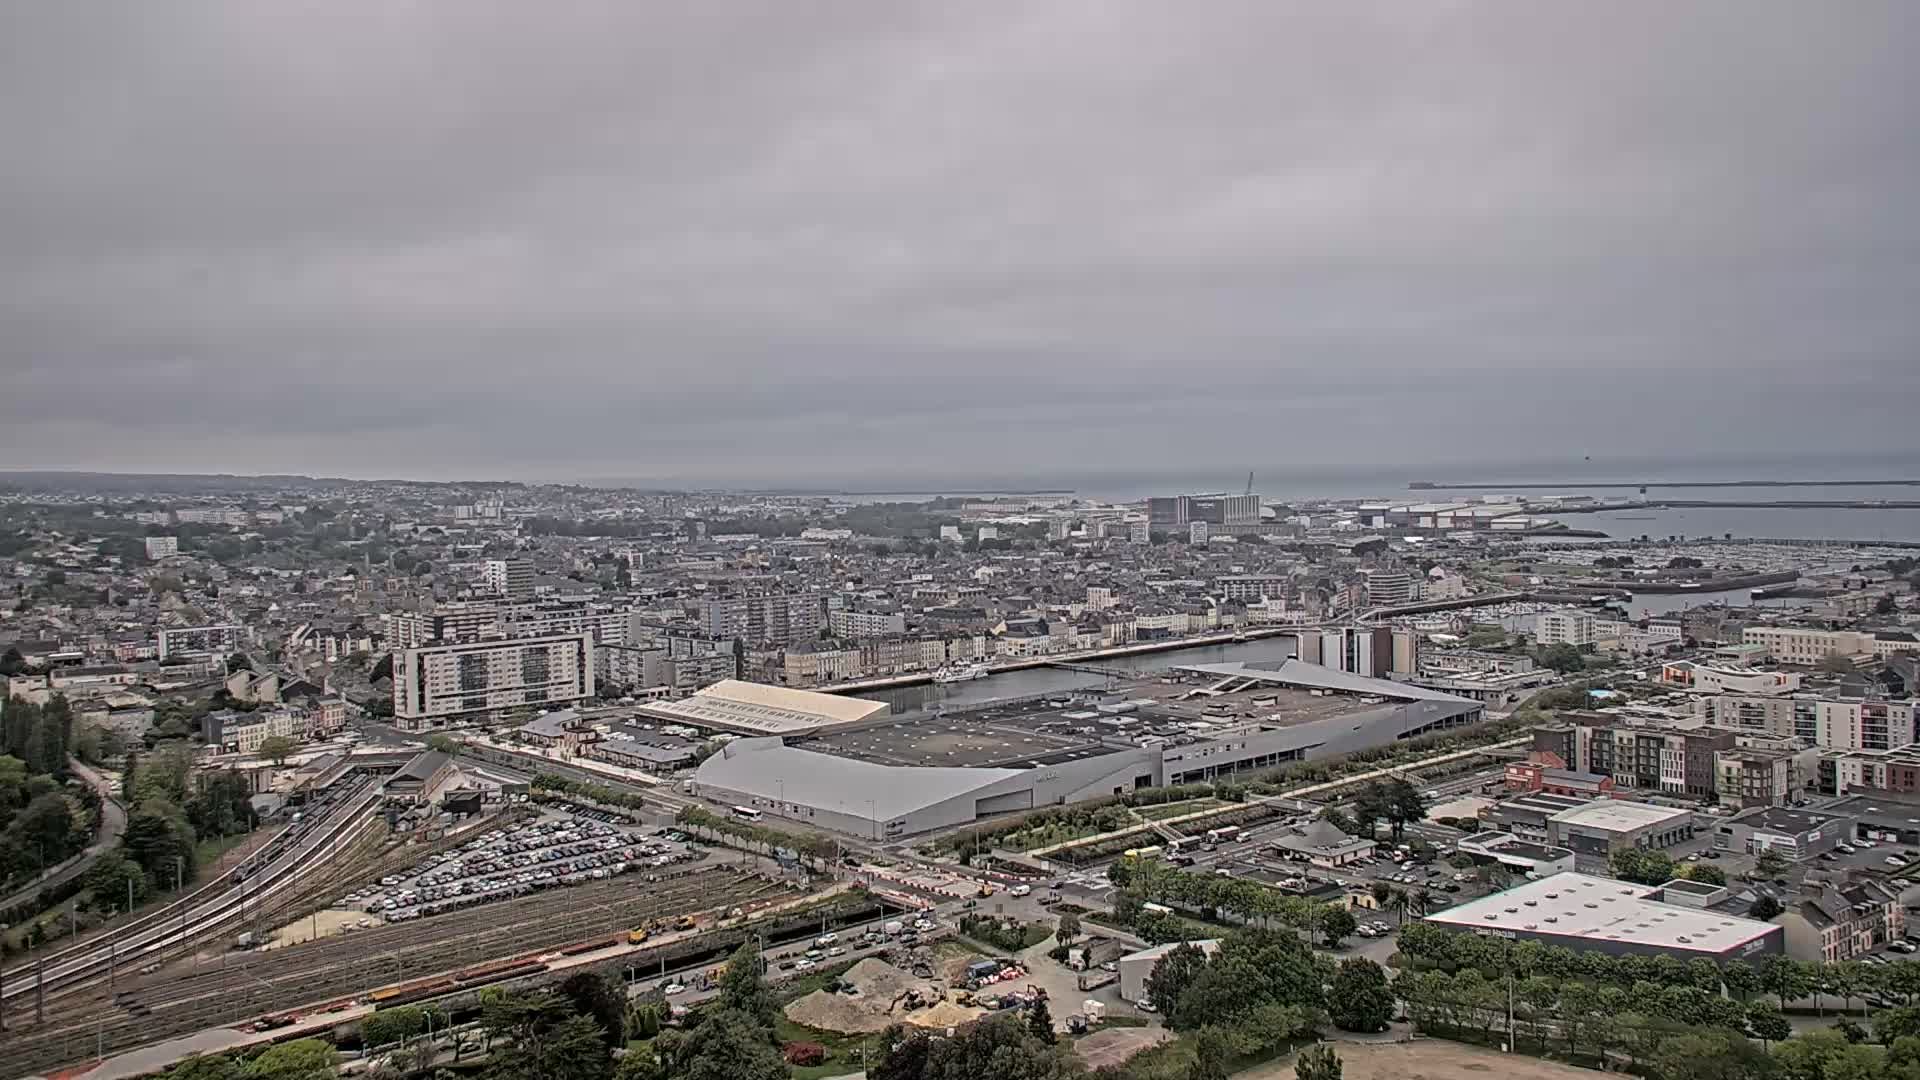 Cherbourg-Octeville Fre. 09:33